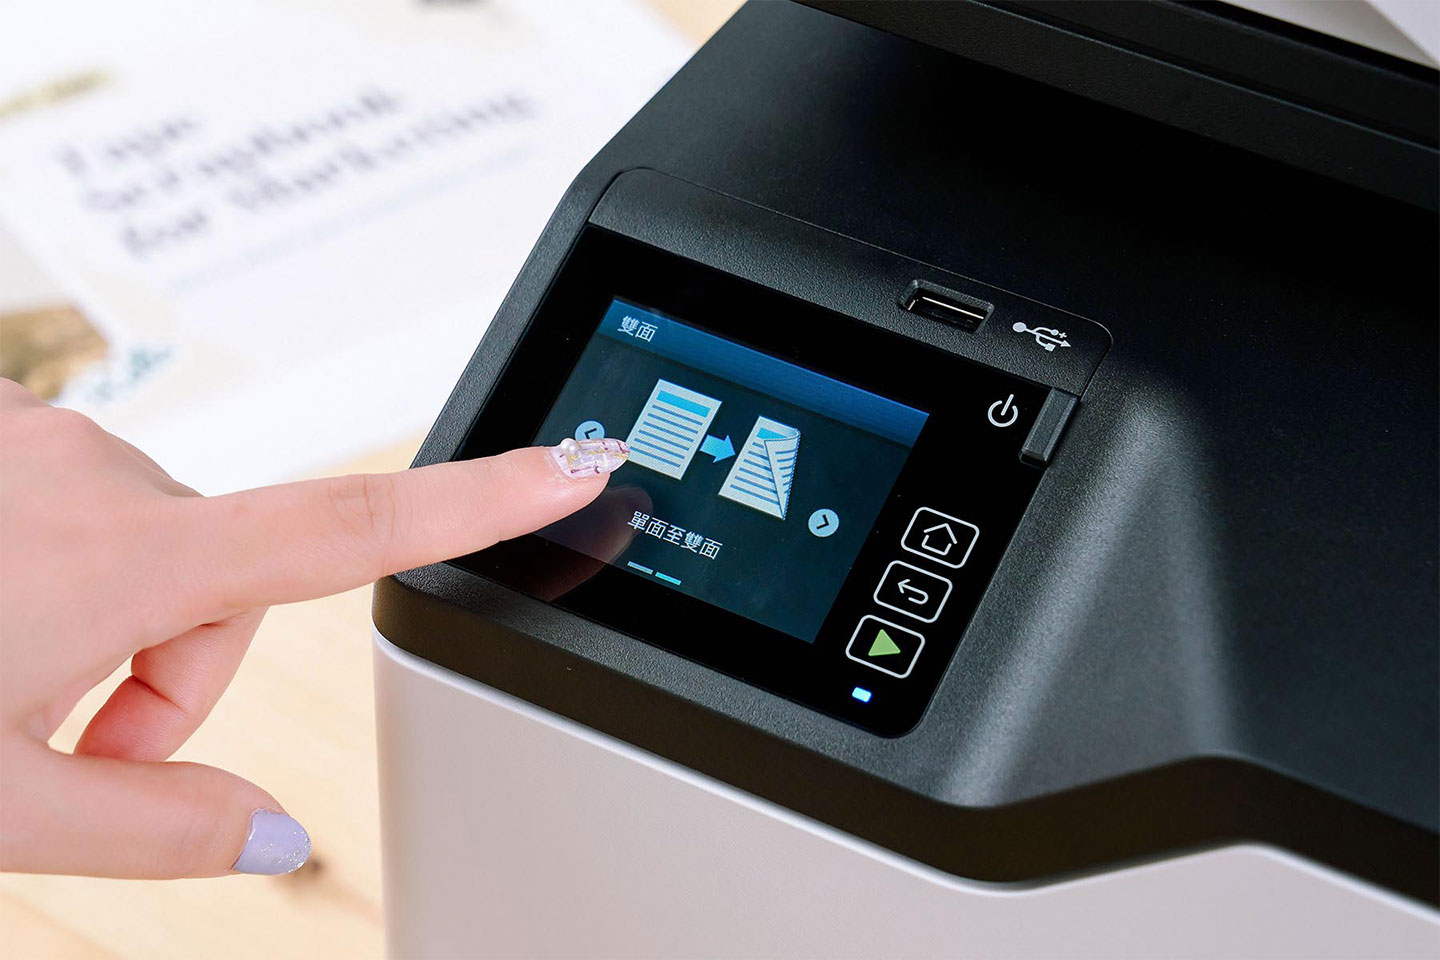 透過觸控面板，在列印時可選擇雙面列印，或是開啟單面至雙面功能，讓原本單面列印的原件可以轉為雙面版本，讓紙張的使用減少一半。